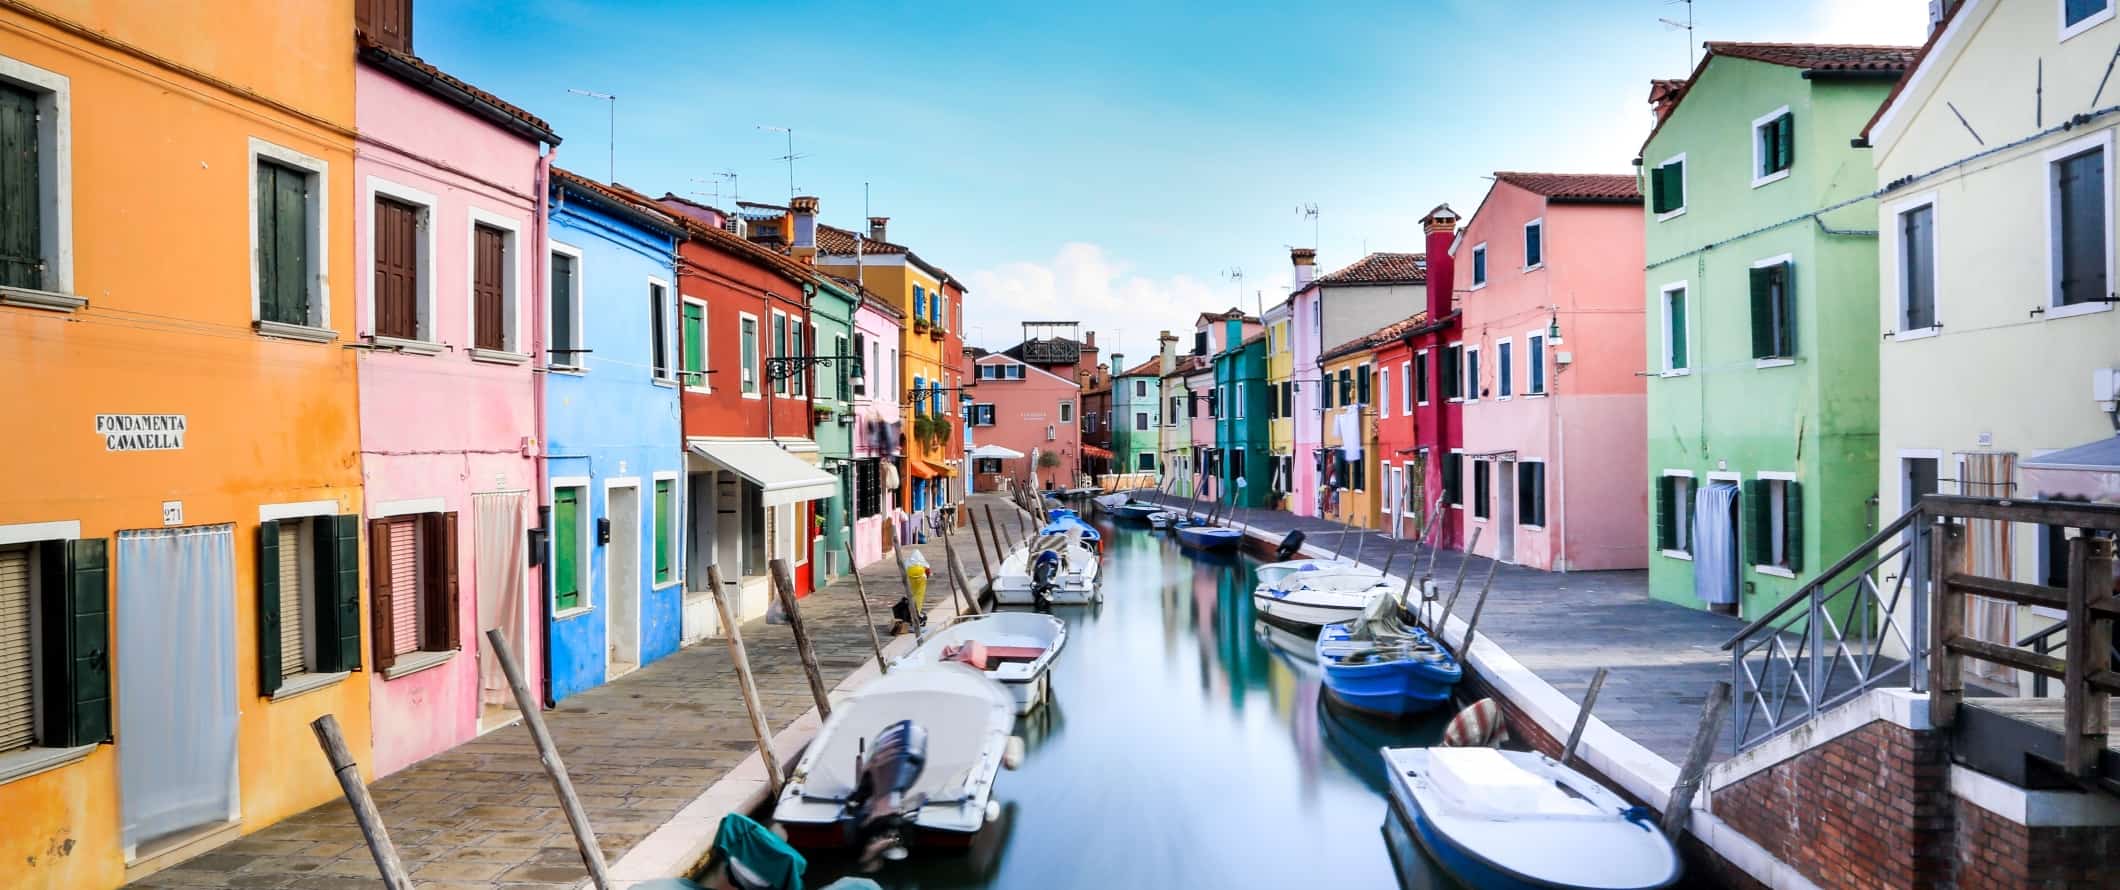 Edifícios coloridos ao longo do canal em Burano, uma ilha perto de Veneza, Itália.